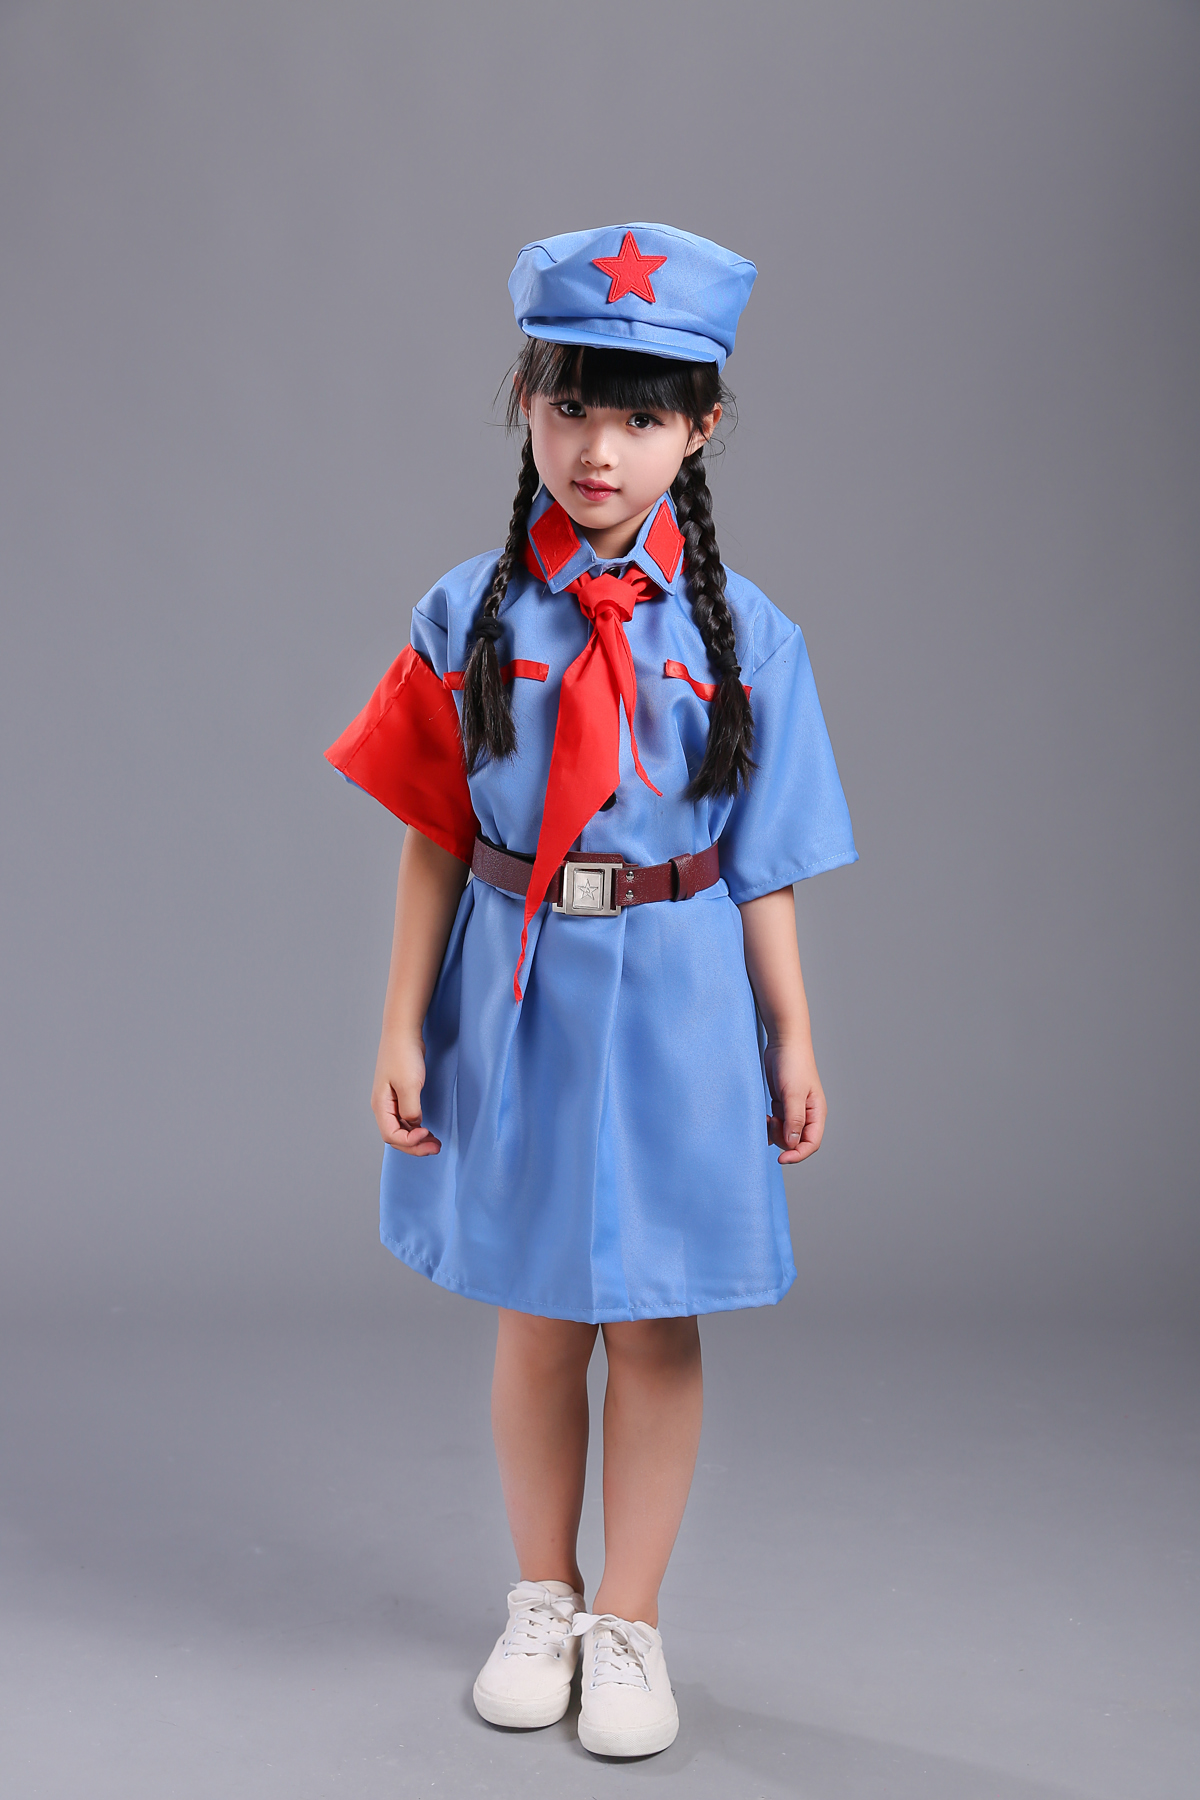 新款儿童八路军演出服军装套装小红军服装摄影男女童军装表演服